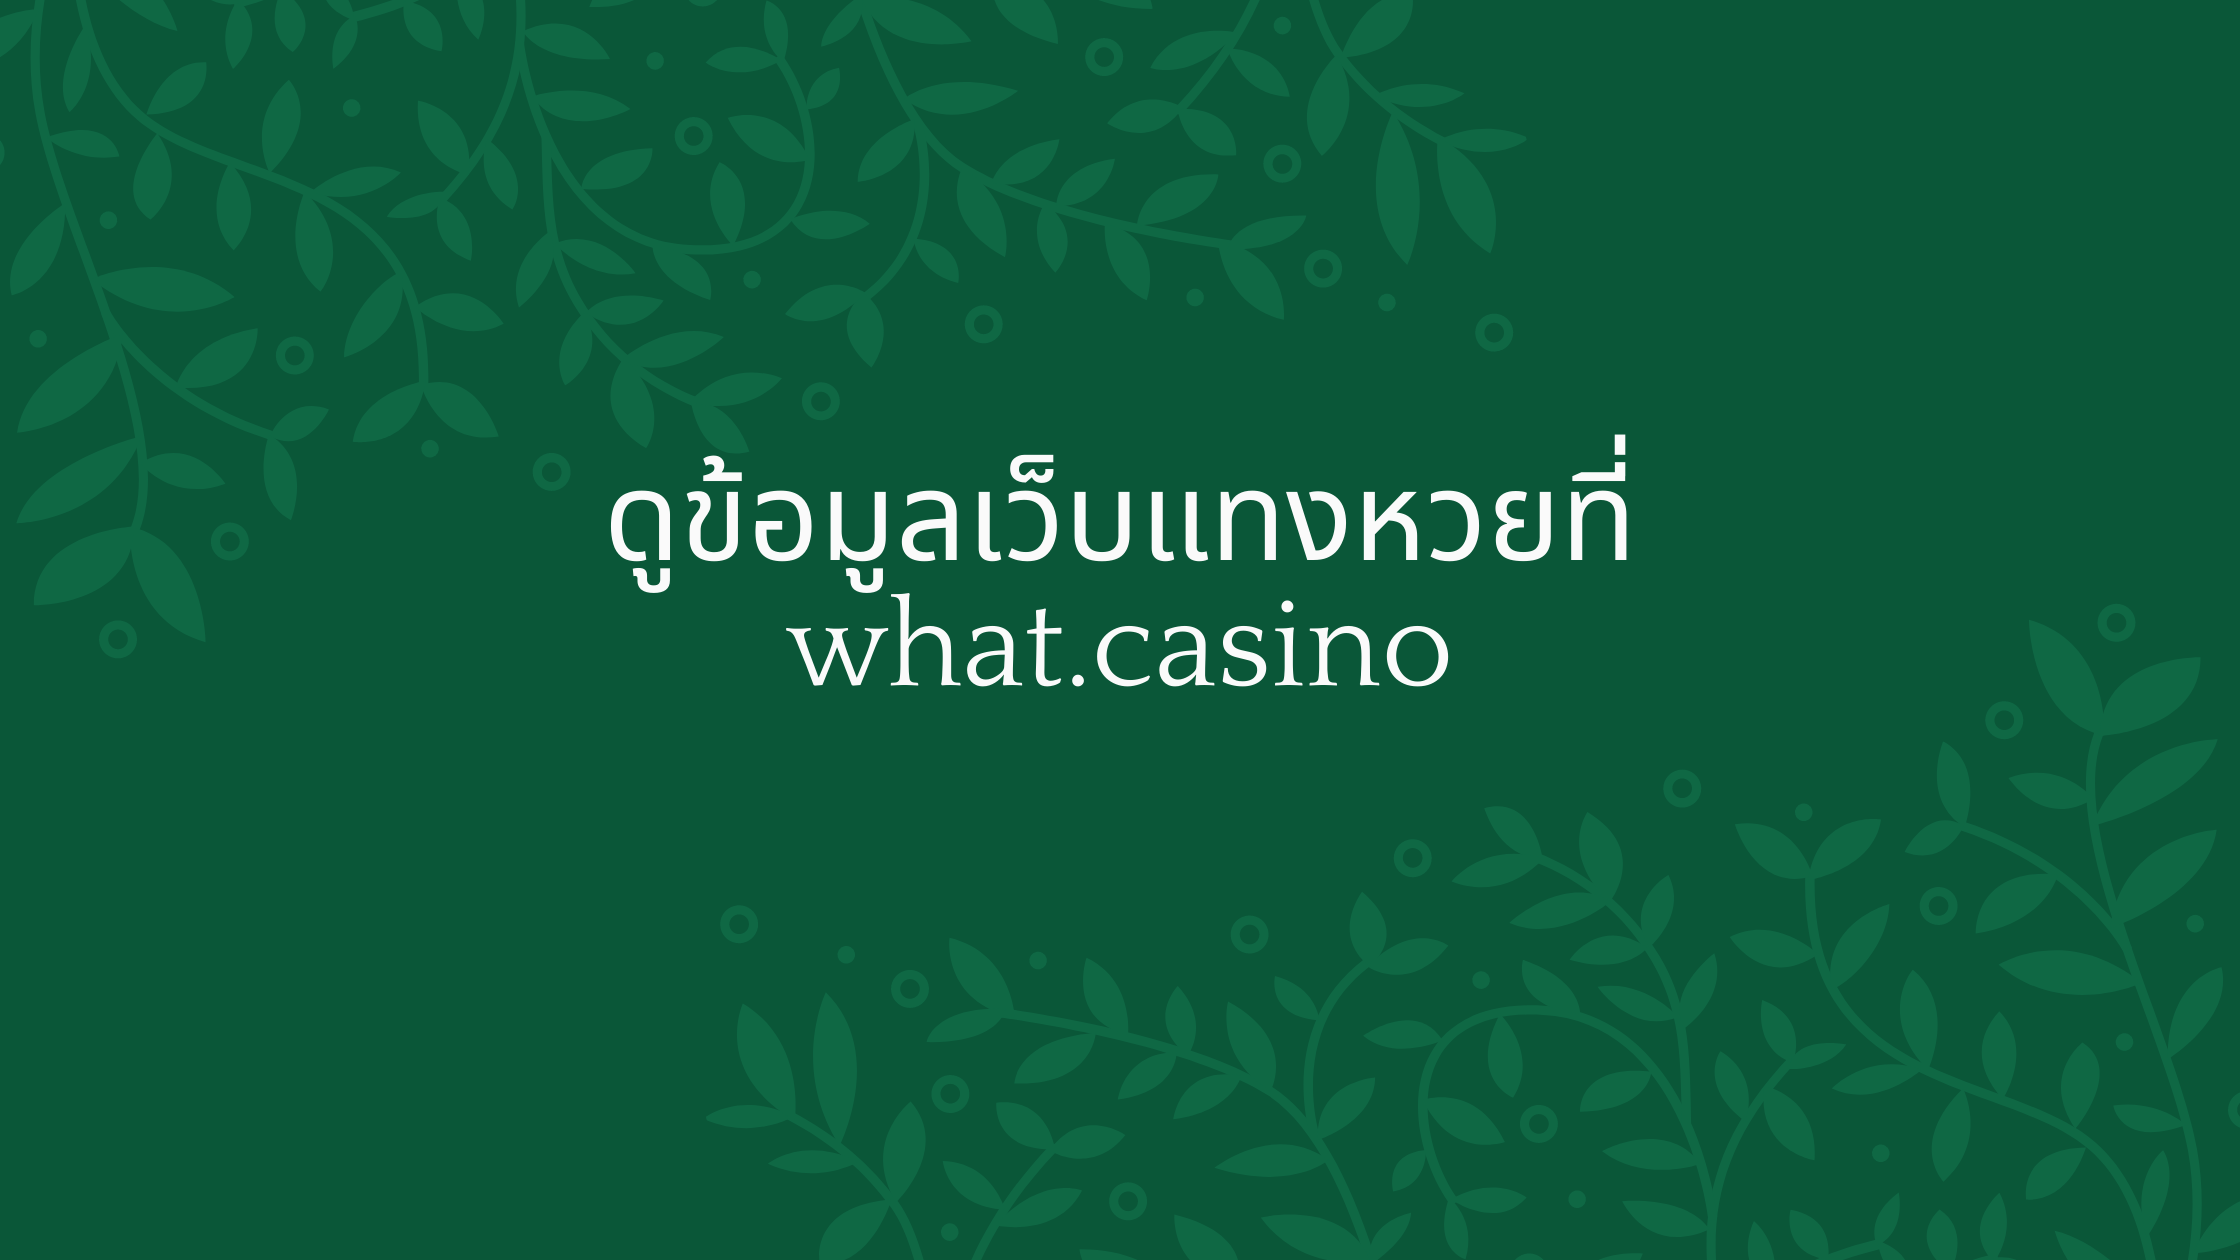 ดูข้อมูลเว็บแทงหวยที่ what.casino